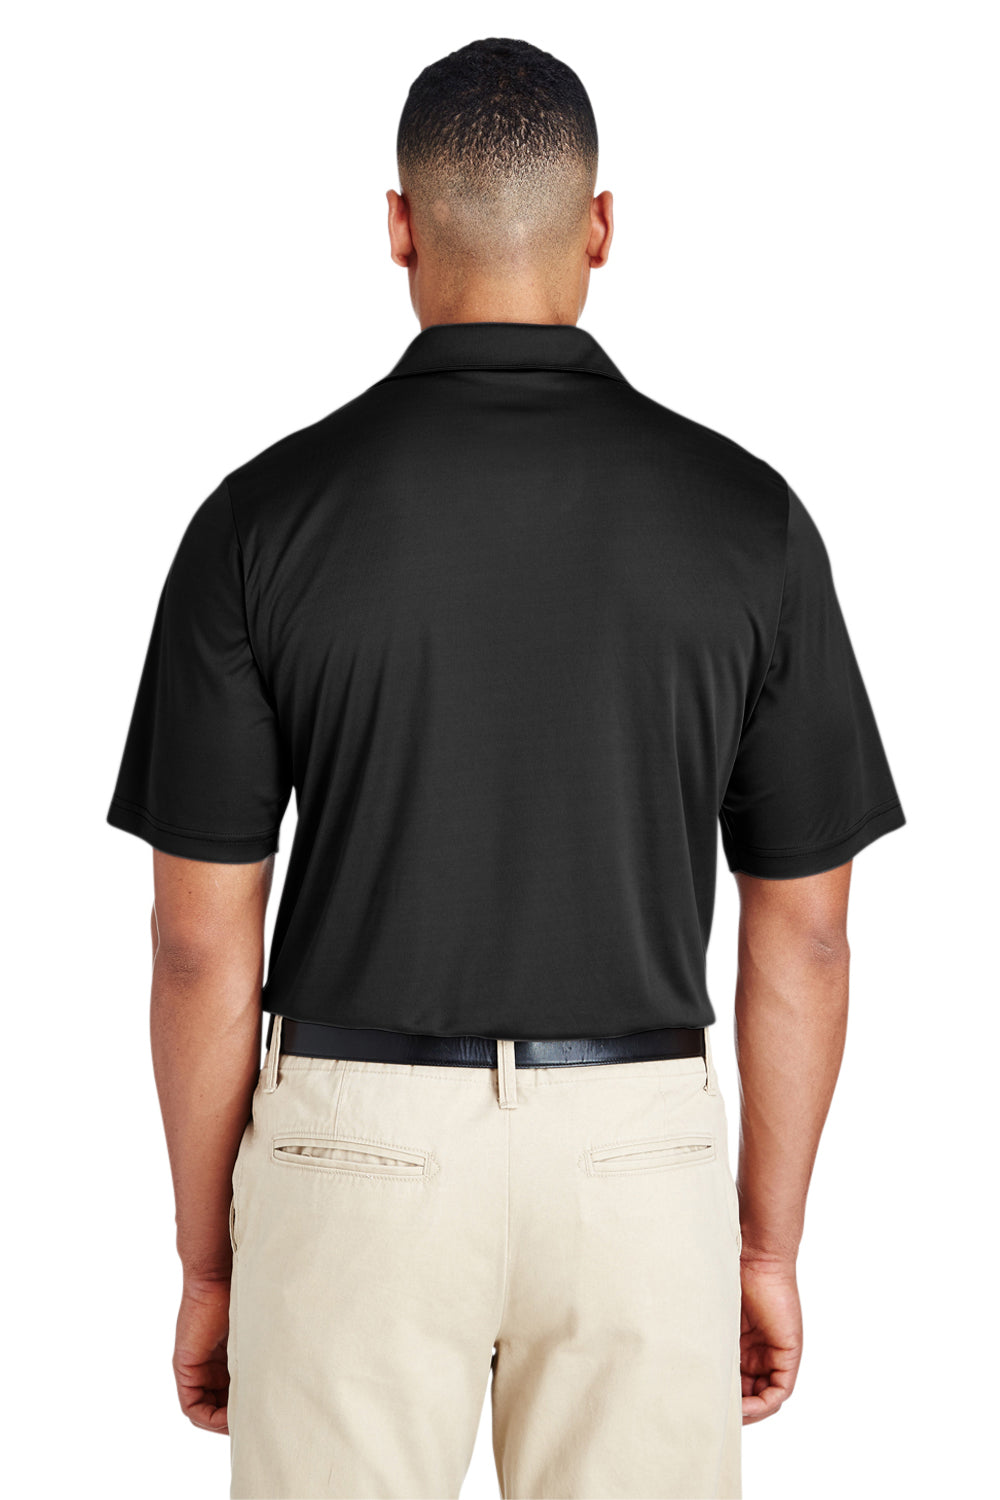 Team 365 TT51 Mens Zone Performance Moisture Wicking Short Sleeve Polo Shirt Black Back